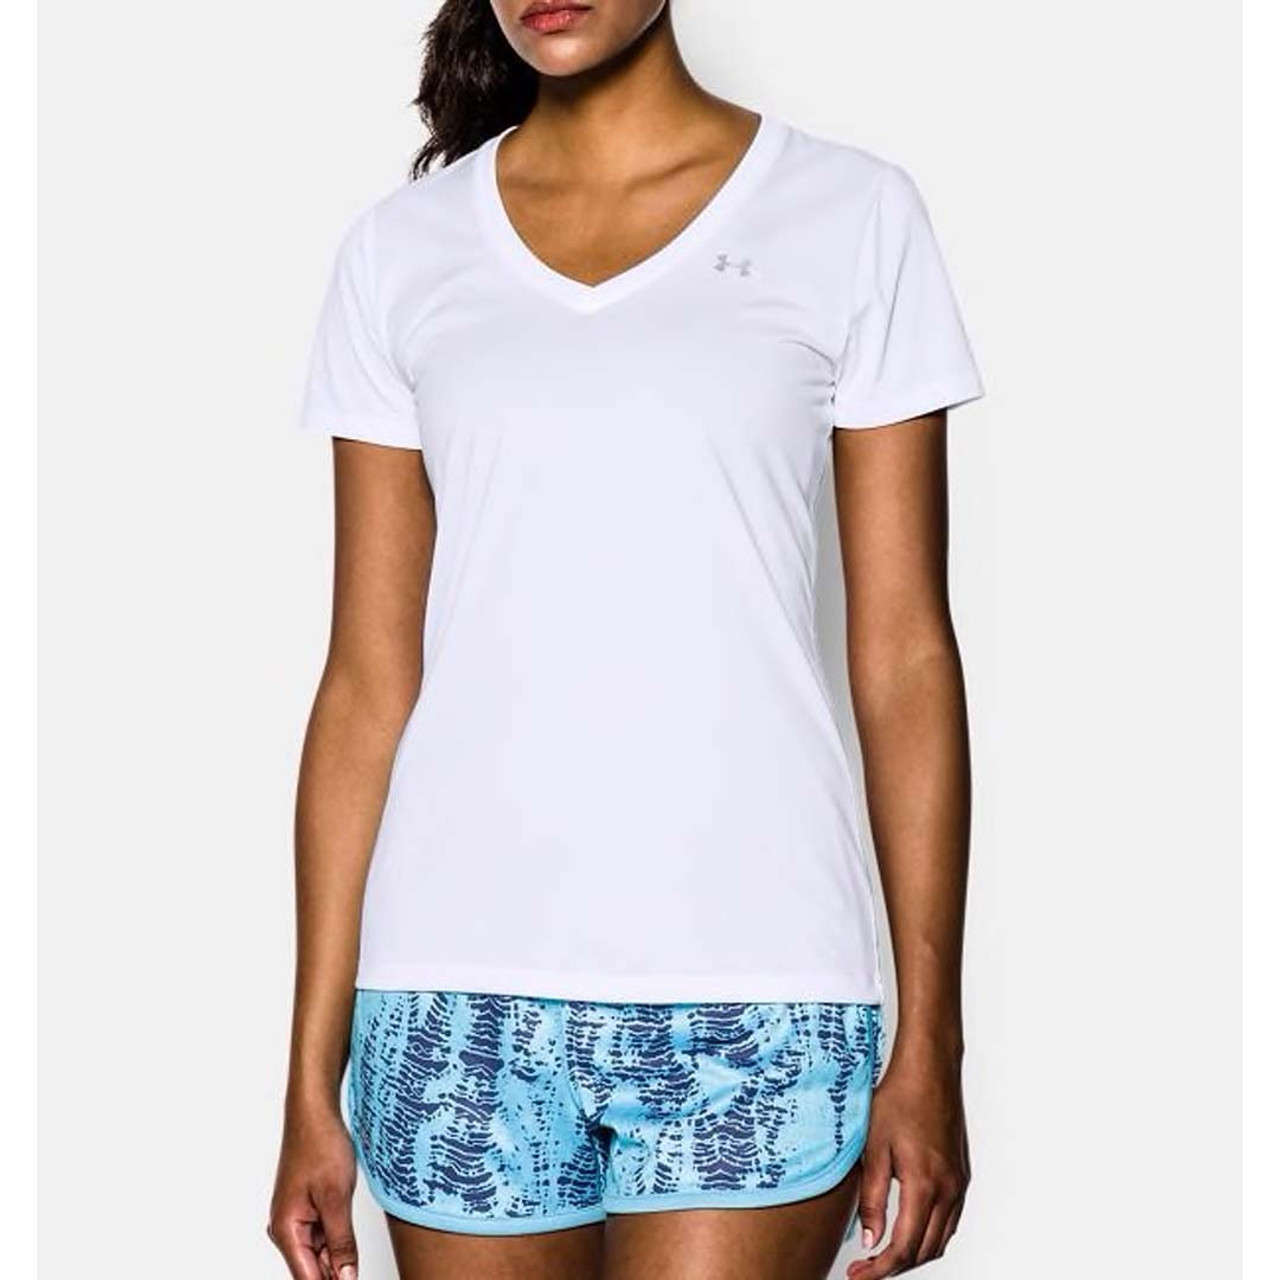 Under Armour Women's White UA Tech V-Neck Shirt $ 24.99